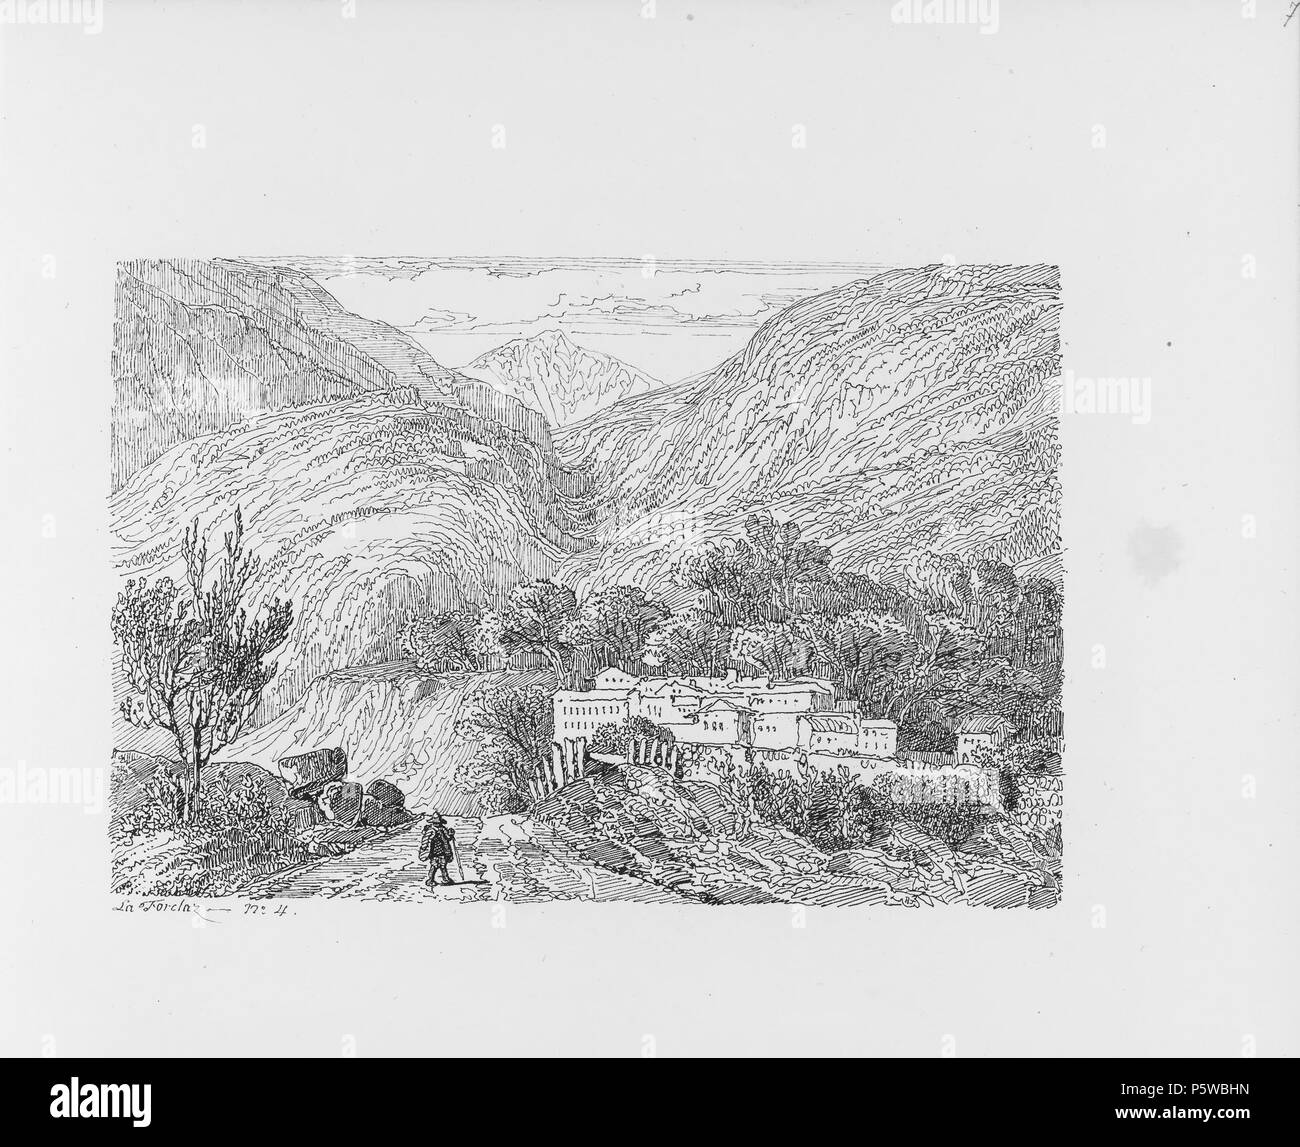 322 CH-NB-Voyage autour du Mont-Blanc dans les vallées d'Hérens de Zermatt et au Grimsel 1843-nbdig-19161-006 Stock Photo